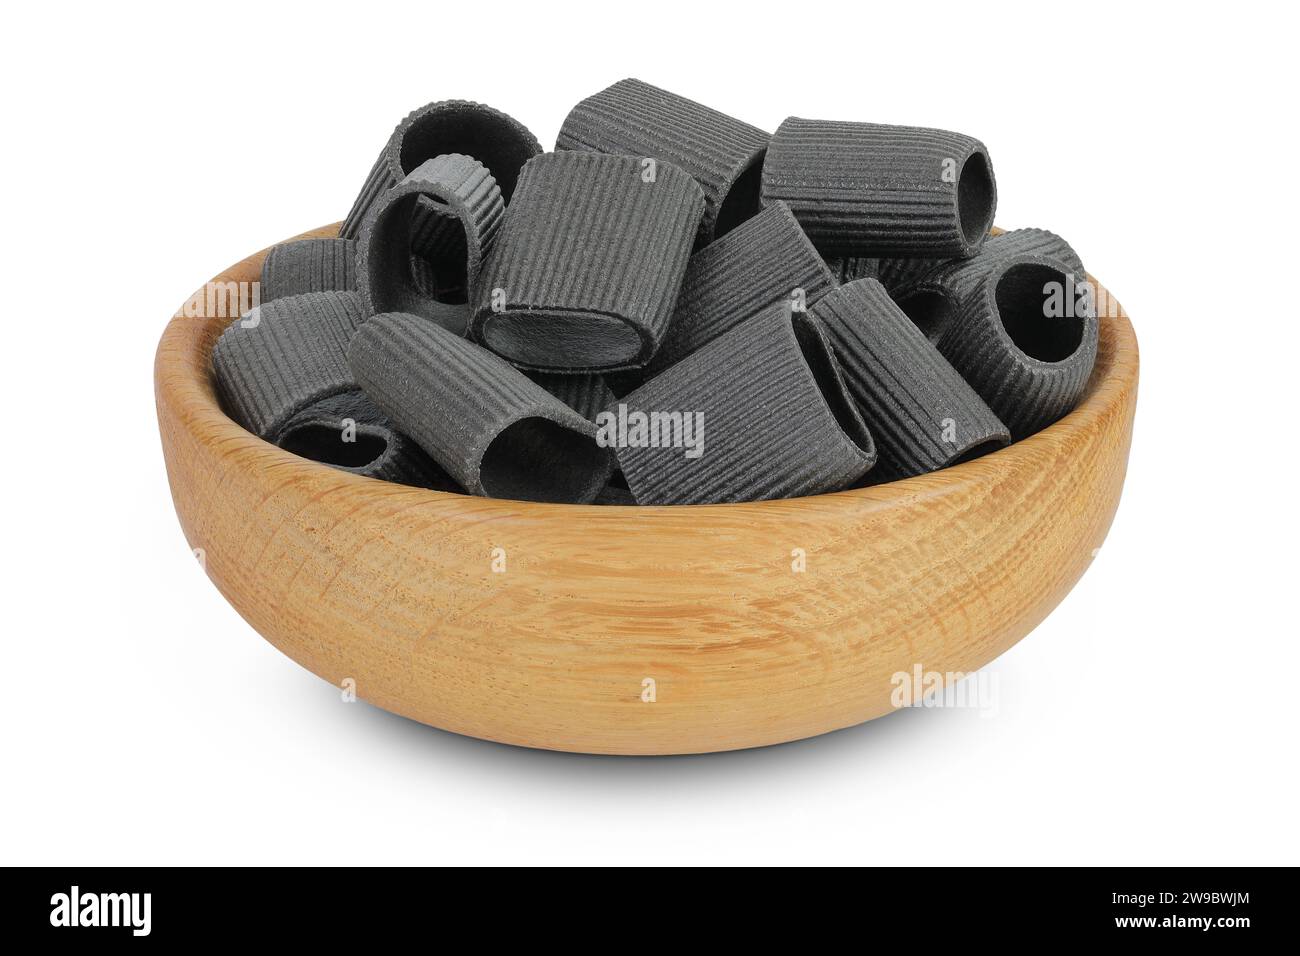 Pâtes noires à l'encre de seiche dans un bol en bois isolé sur fond blanc Banque D'Images